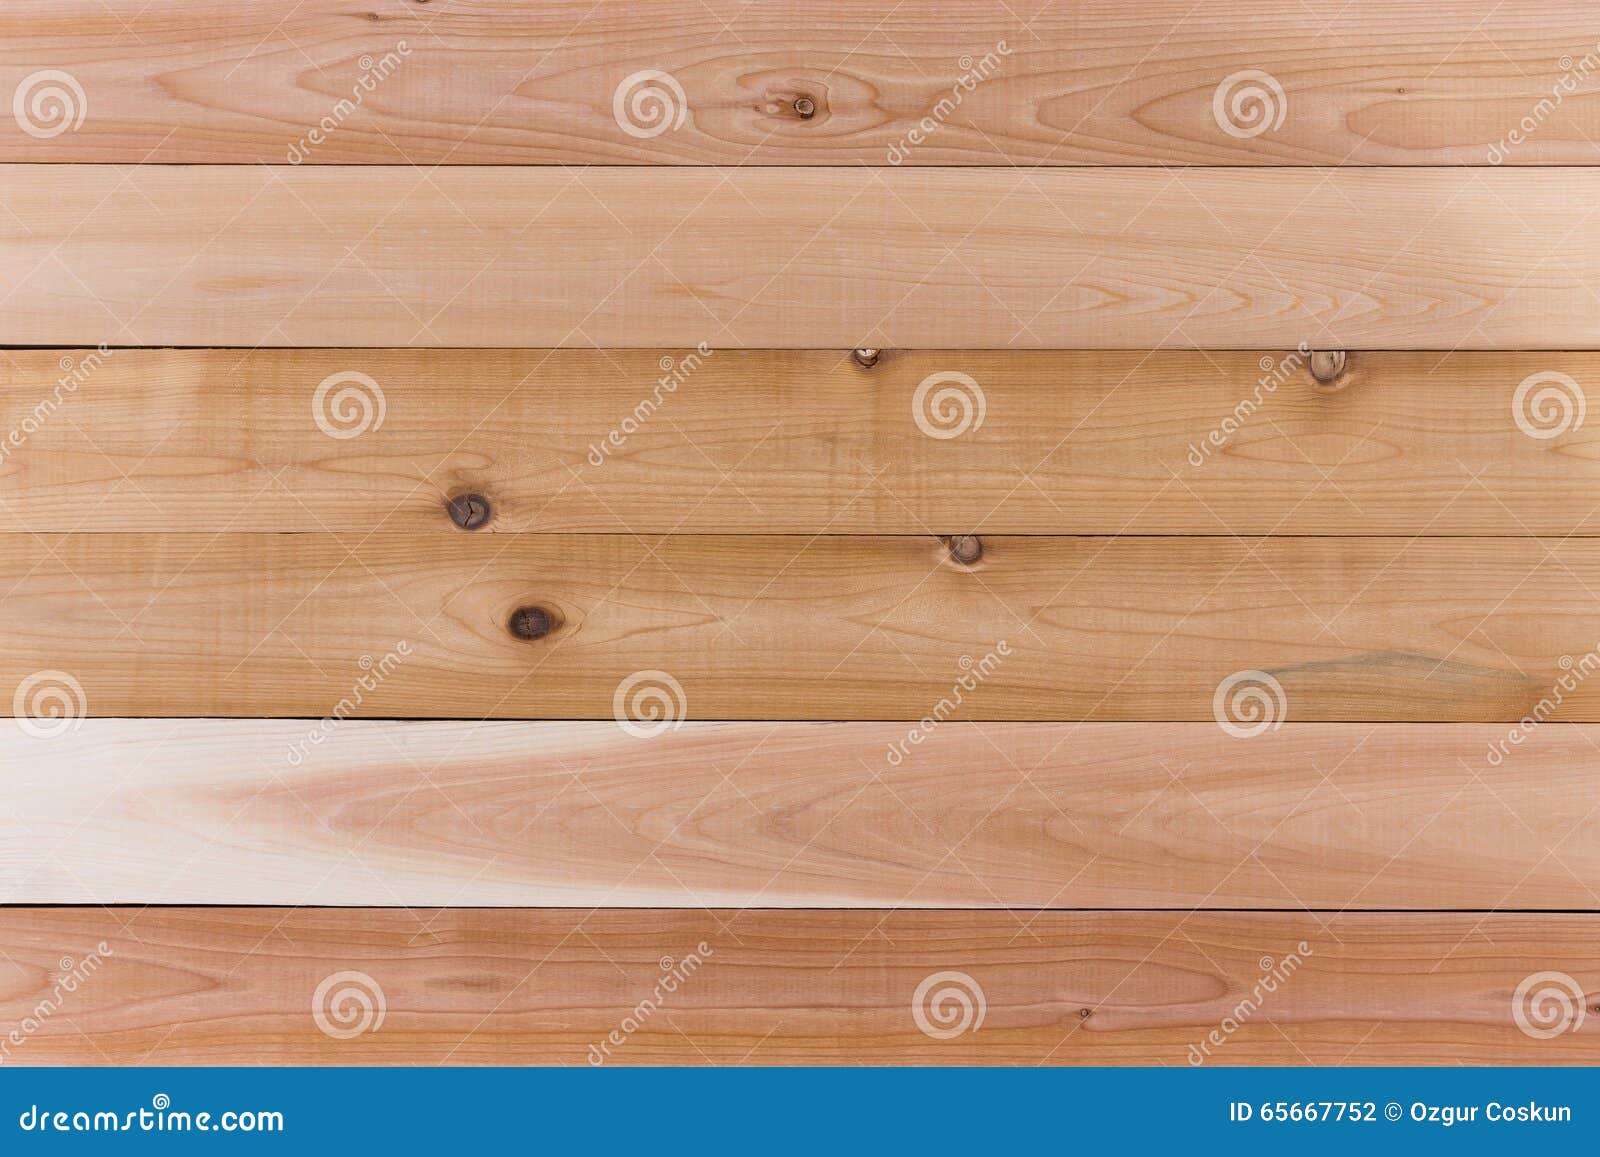 empty cedar wood wall with horizontal orientation